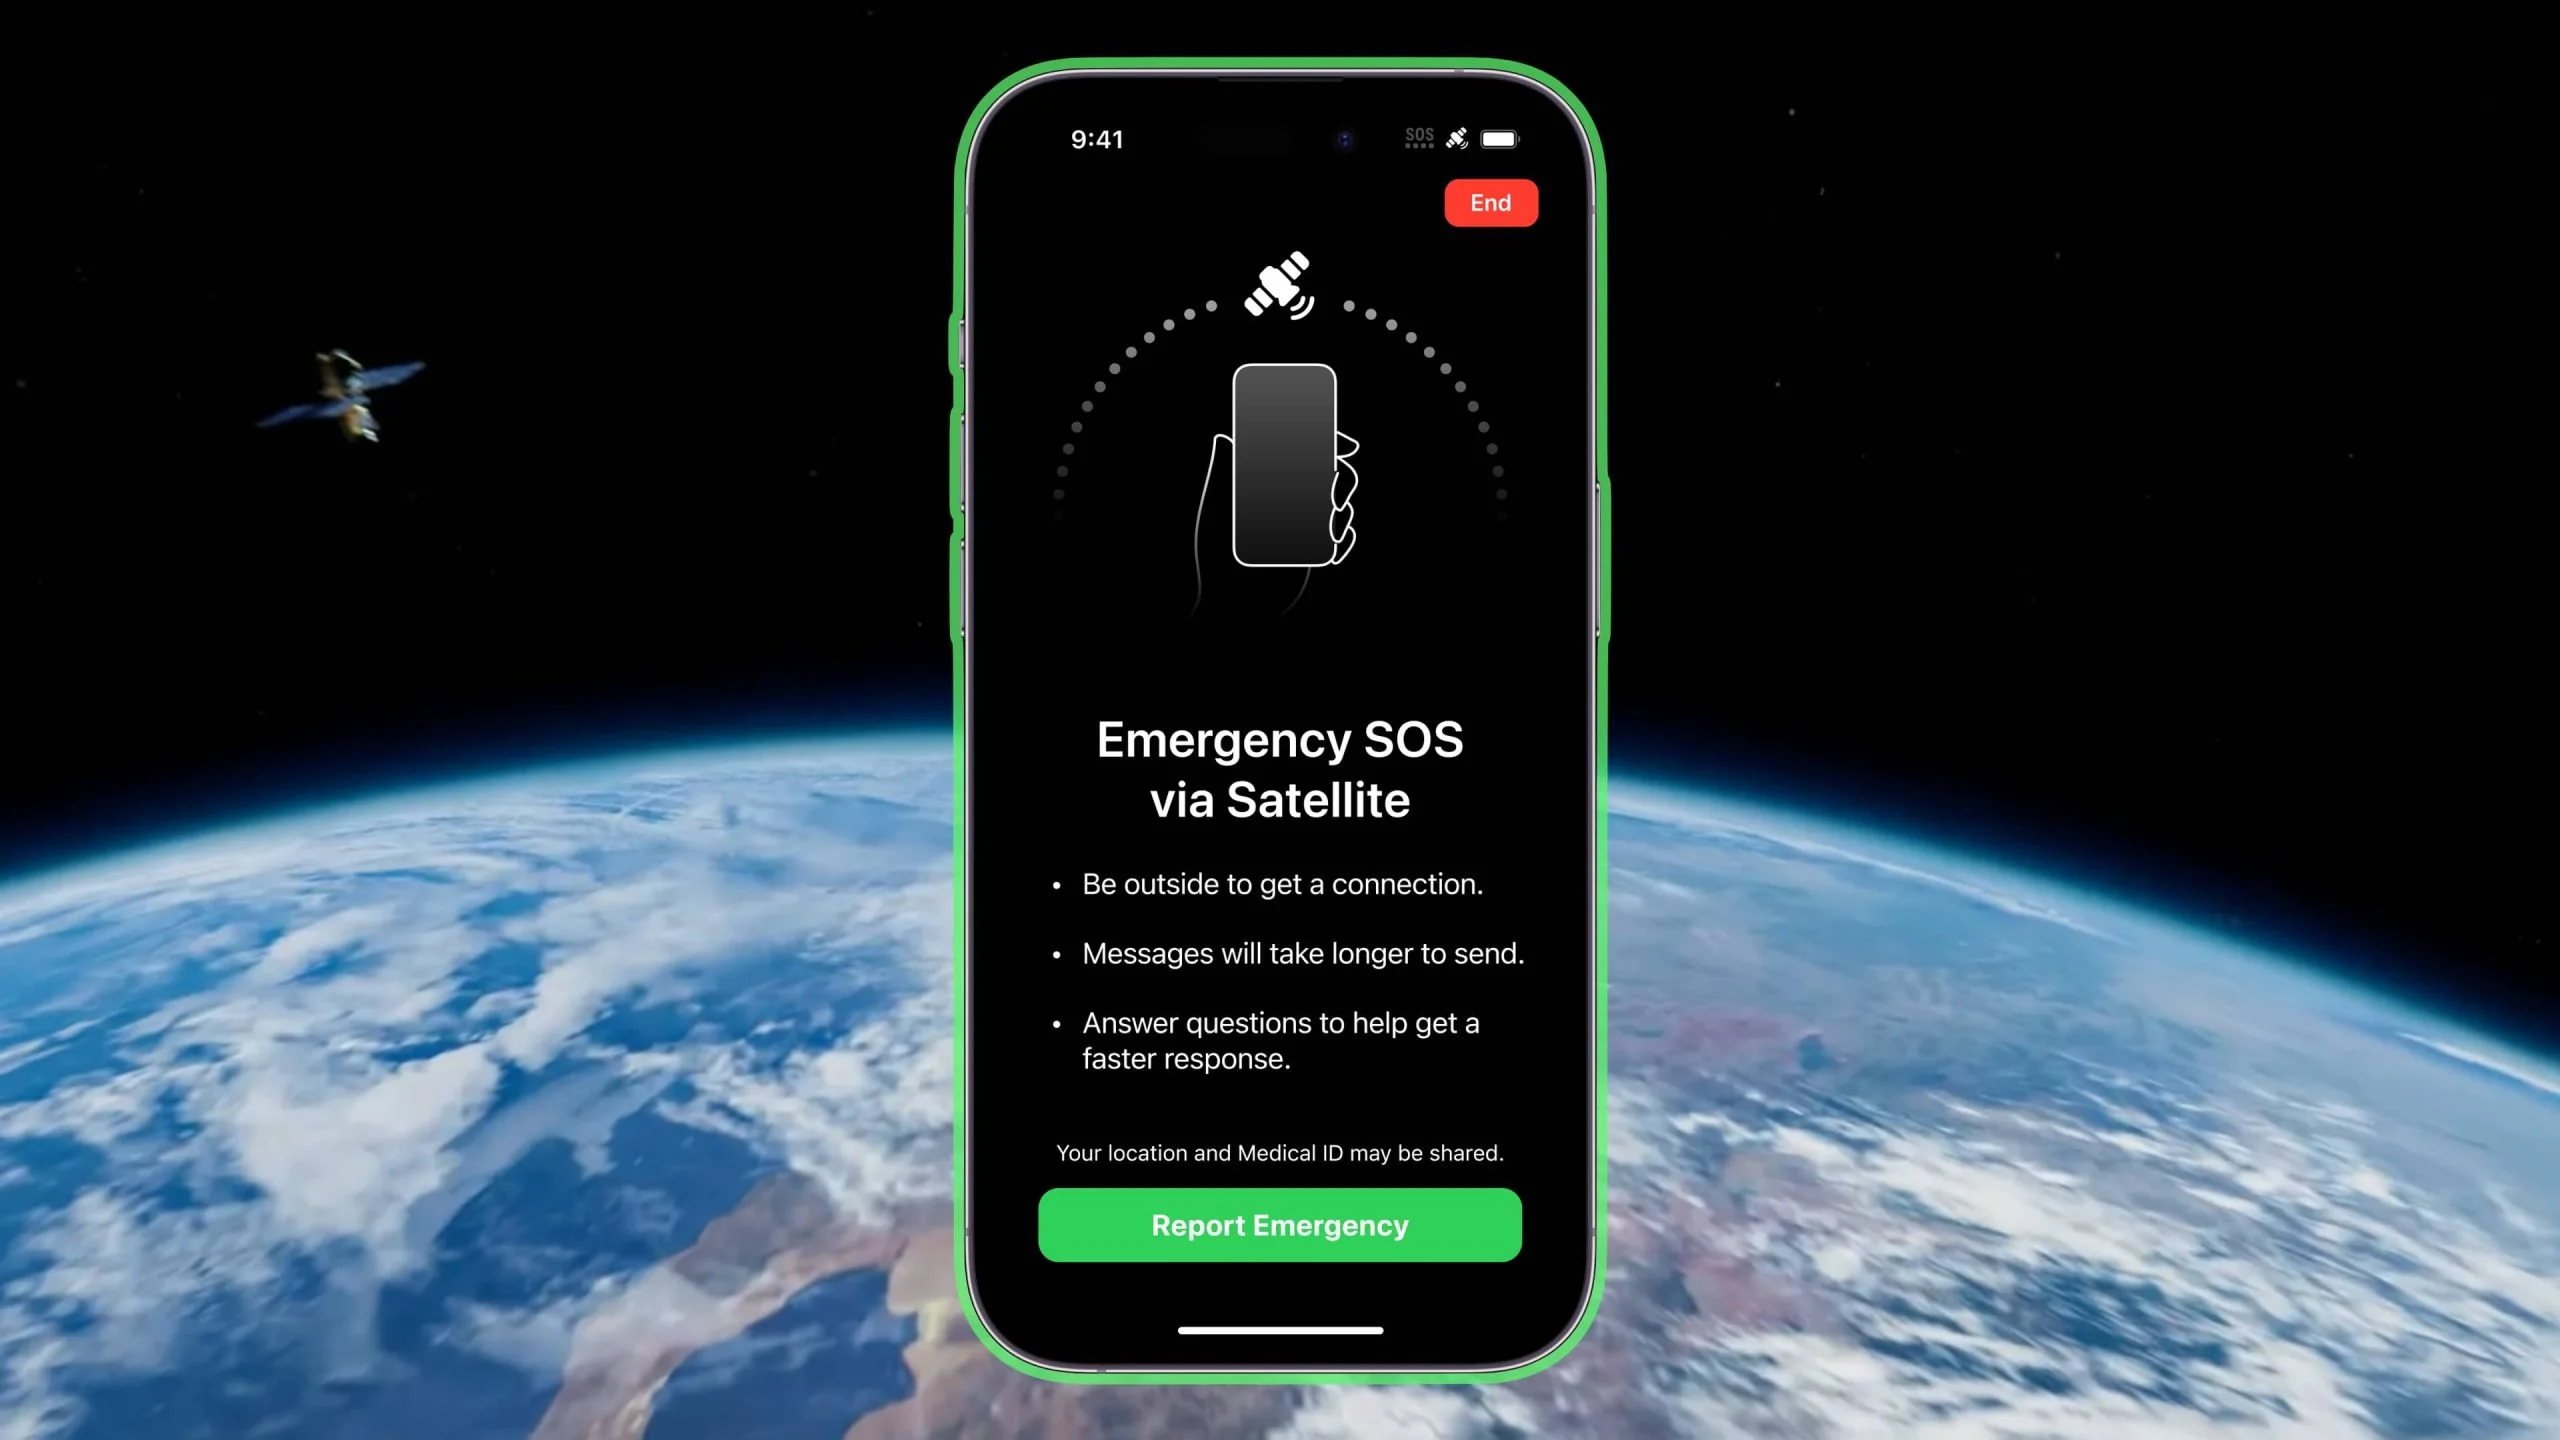 Cara menggunakan SOS Darurat melalui satelit di iPhone